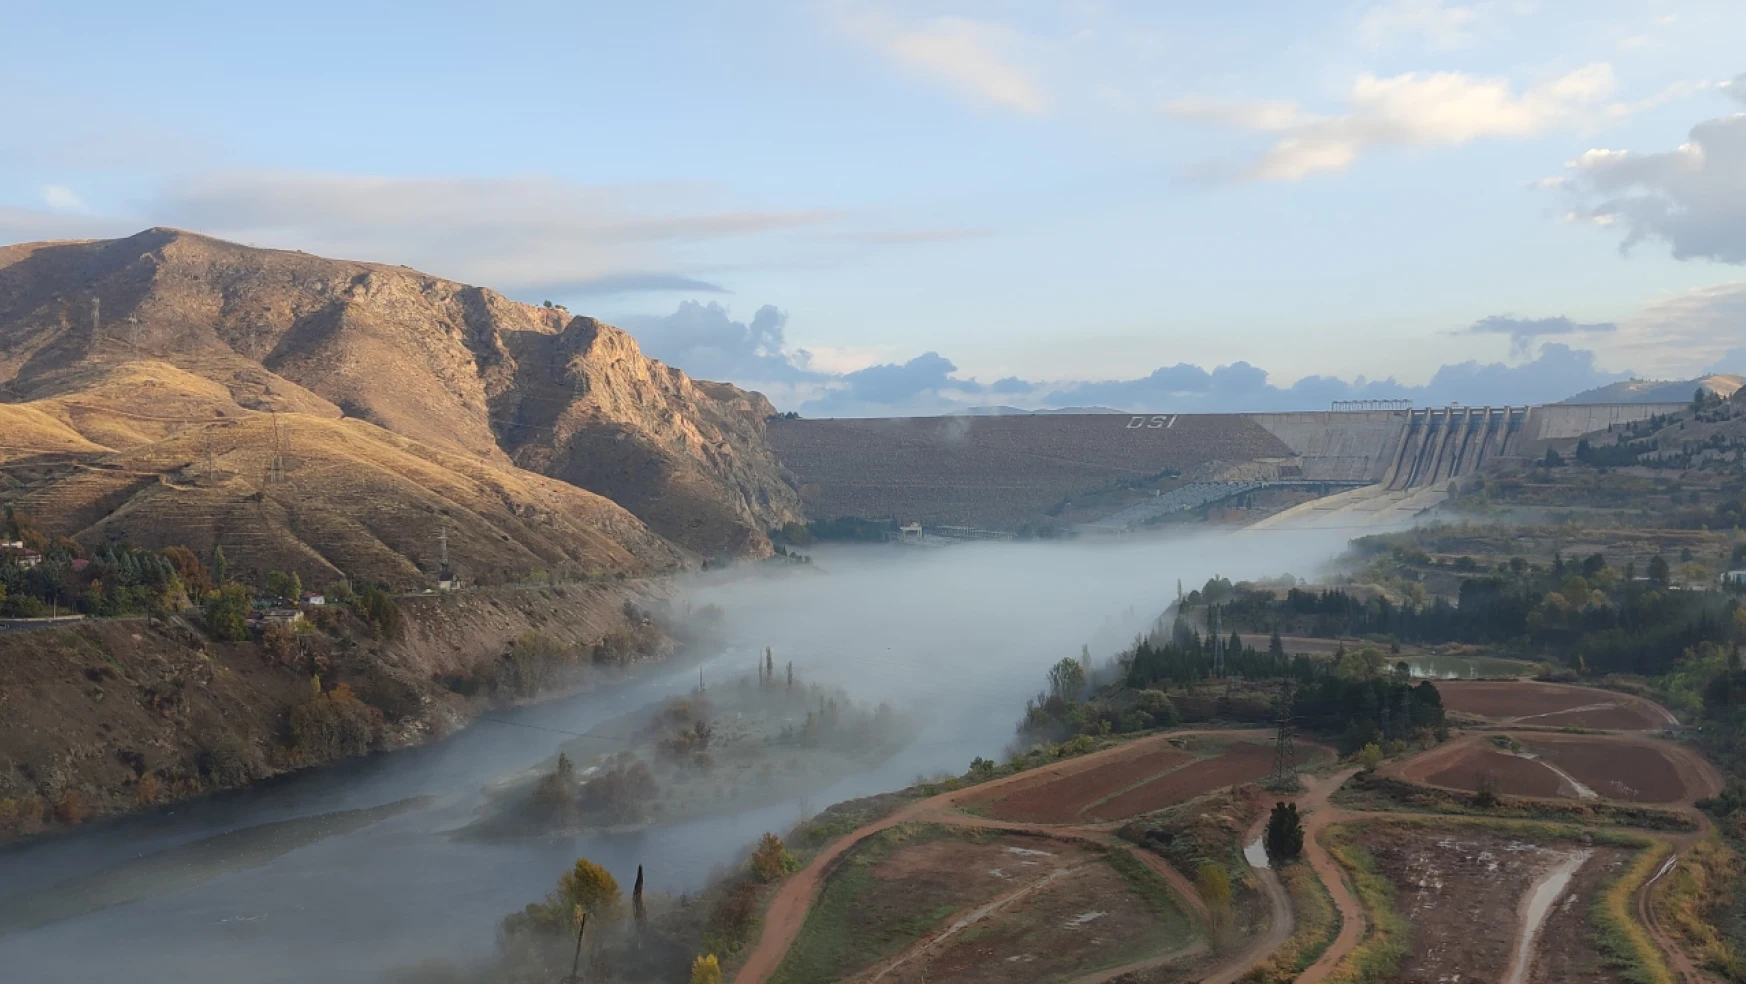 Keban Barajı üzerindeki sis, kartpostallık görüntü oluşturdu